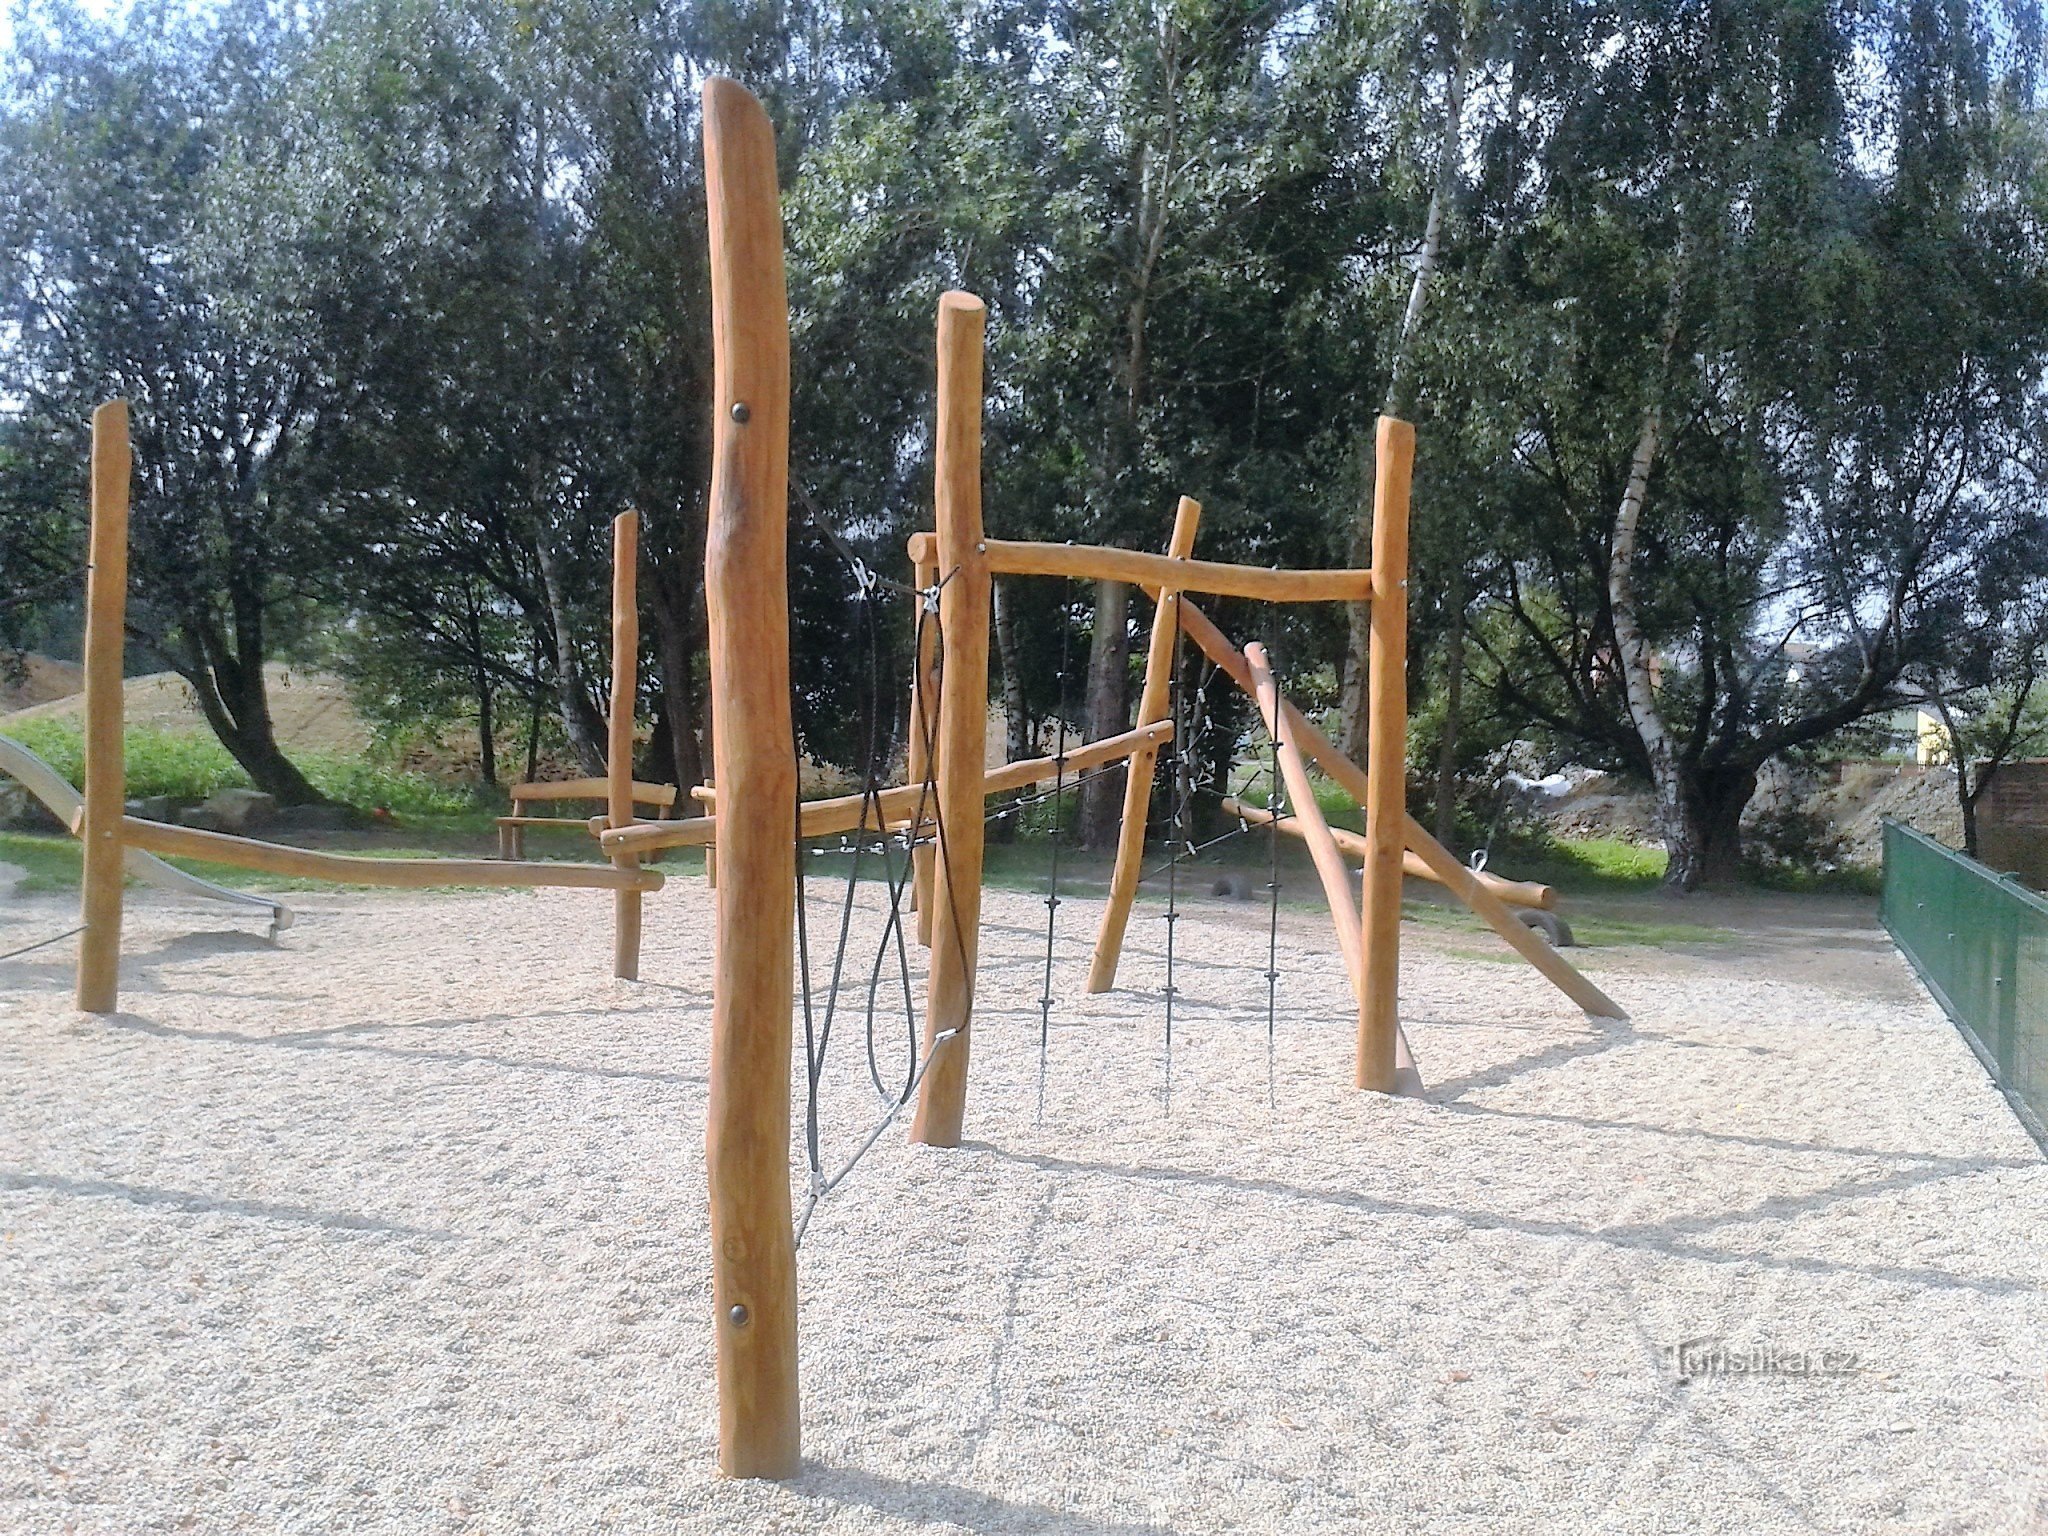 Zábřeh - Parque infantil Oborník (nuevo para todas las categorías de niños)